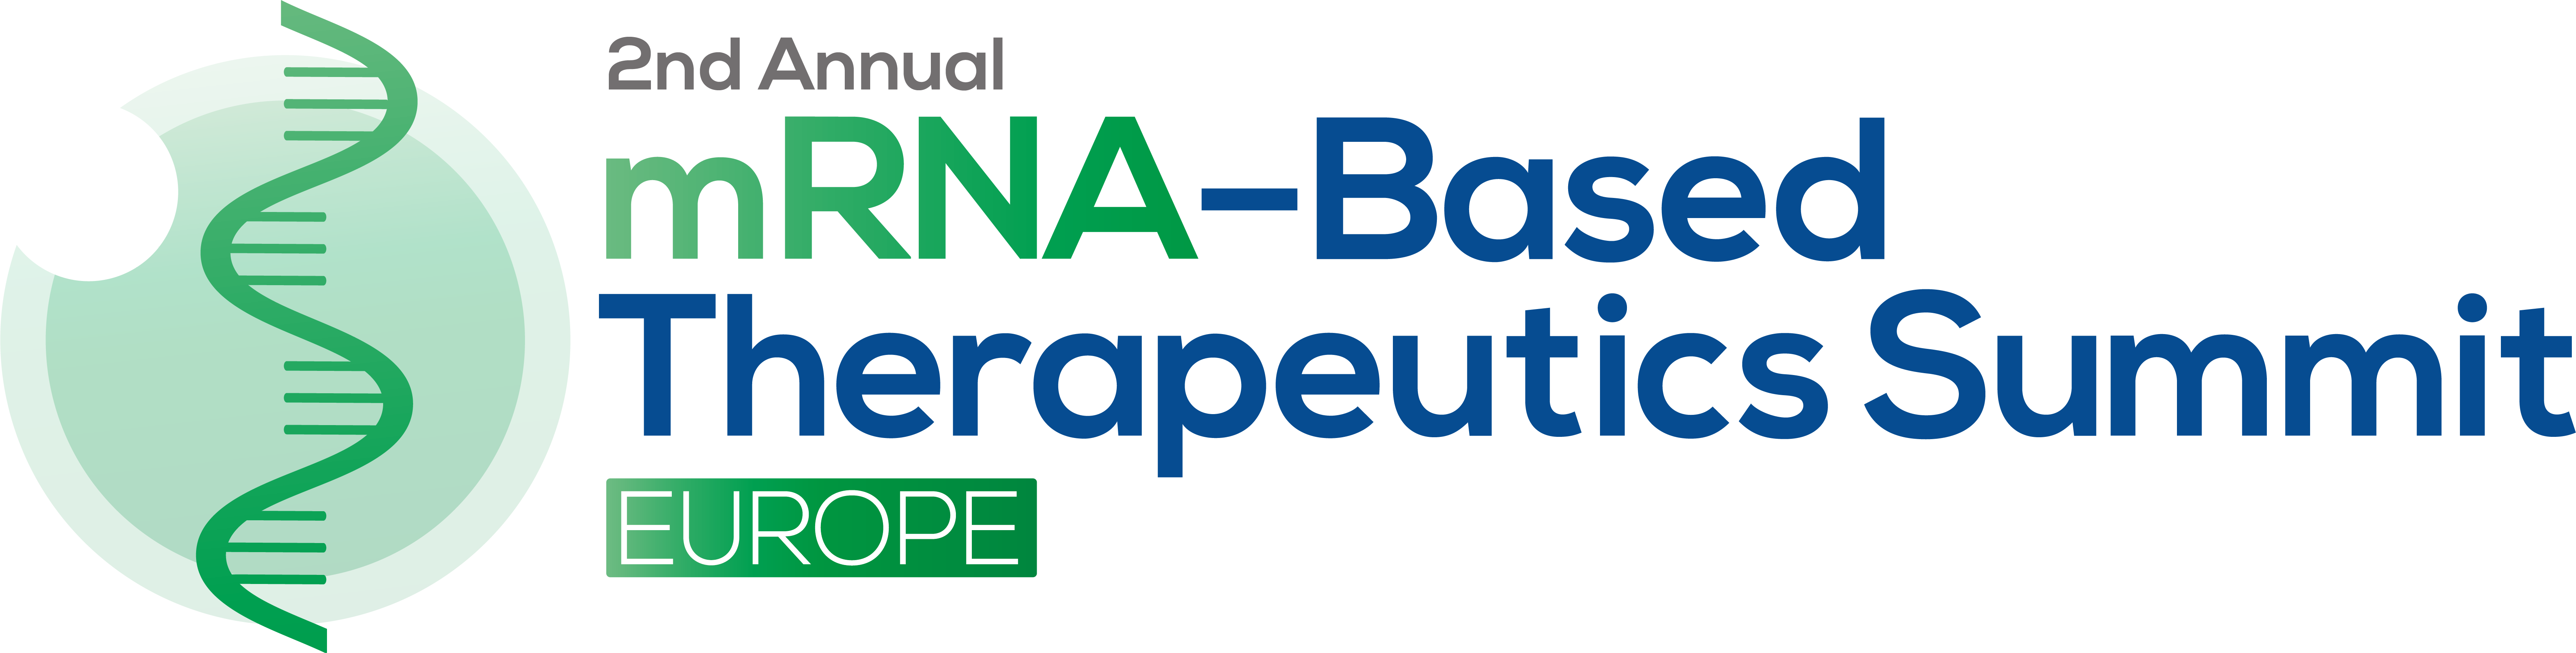 2nd mRNA Based Therapeutics Summit Europe logo FINAL